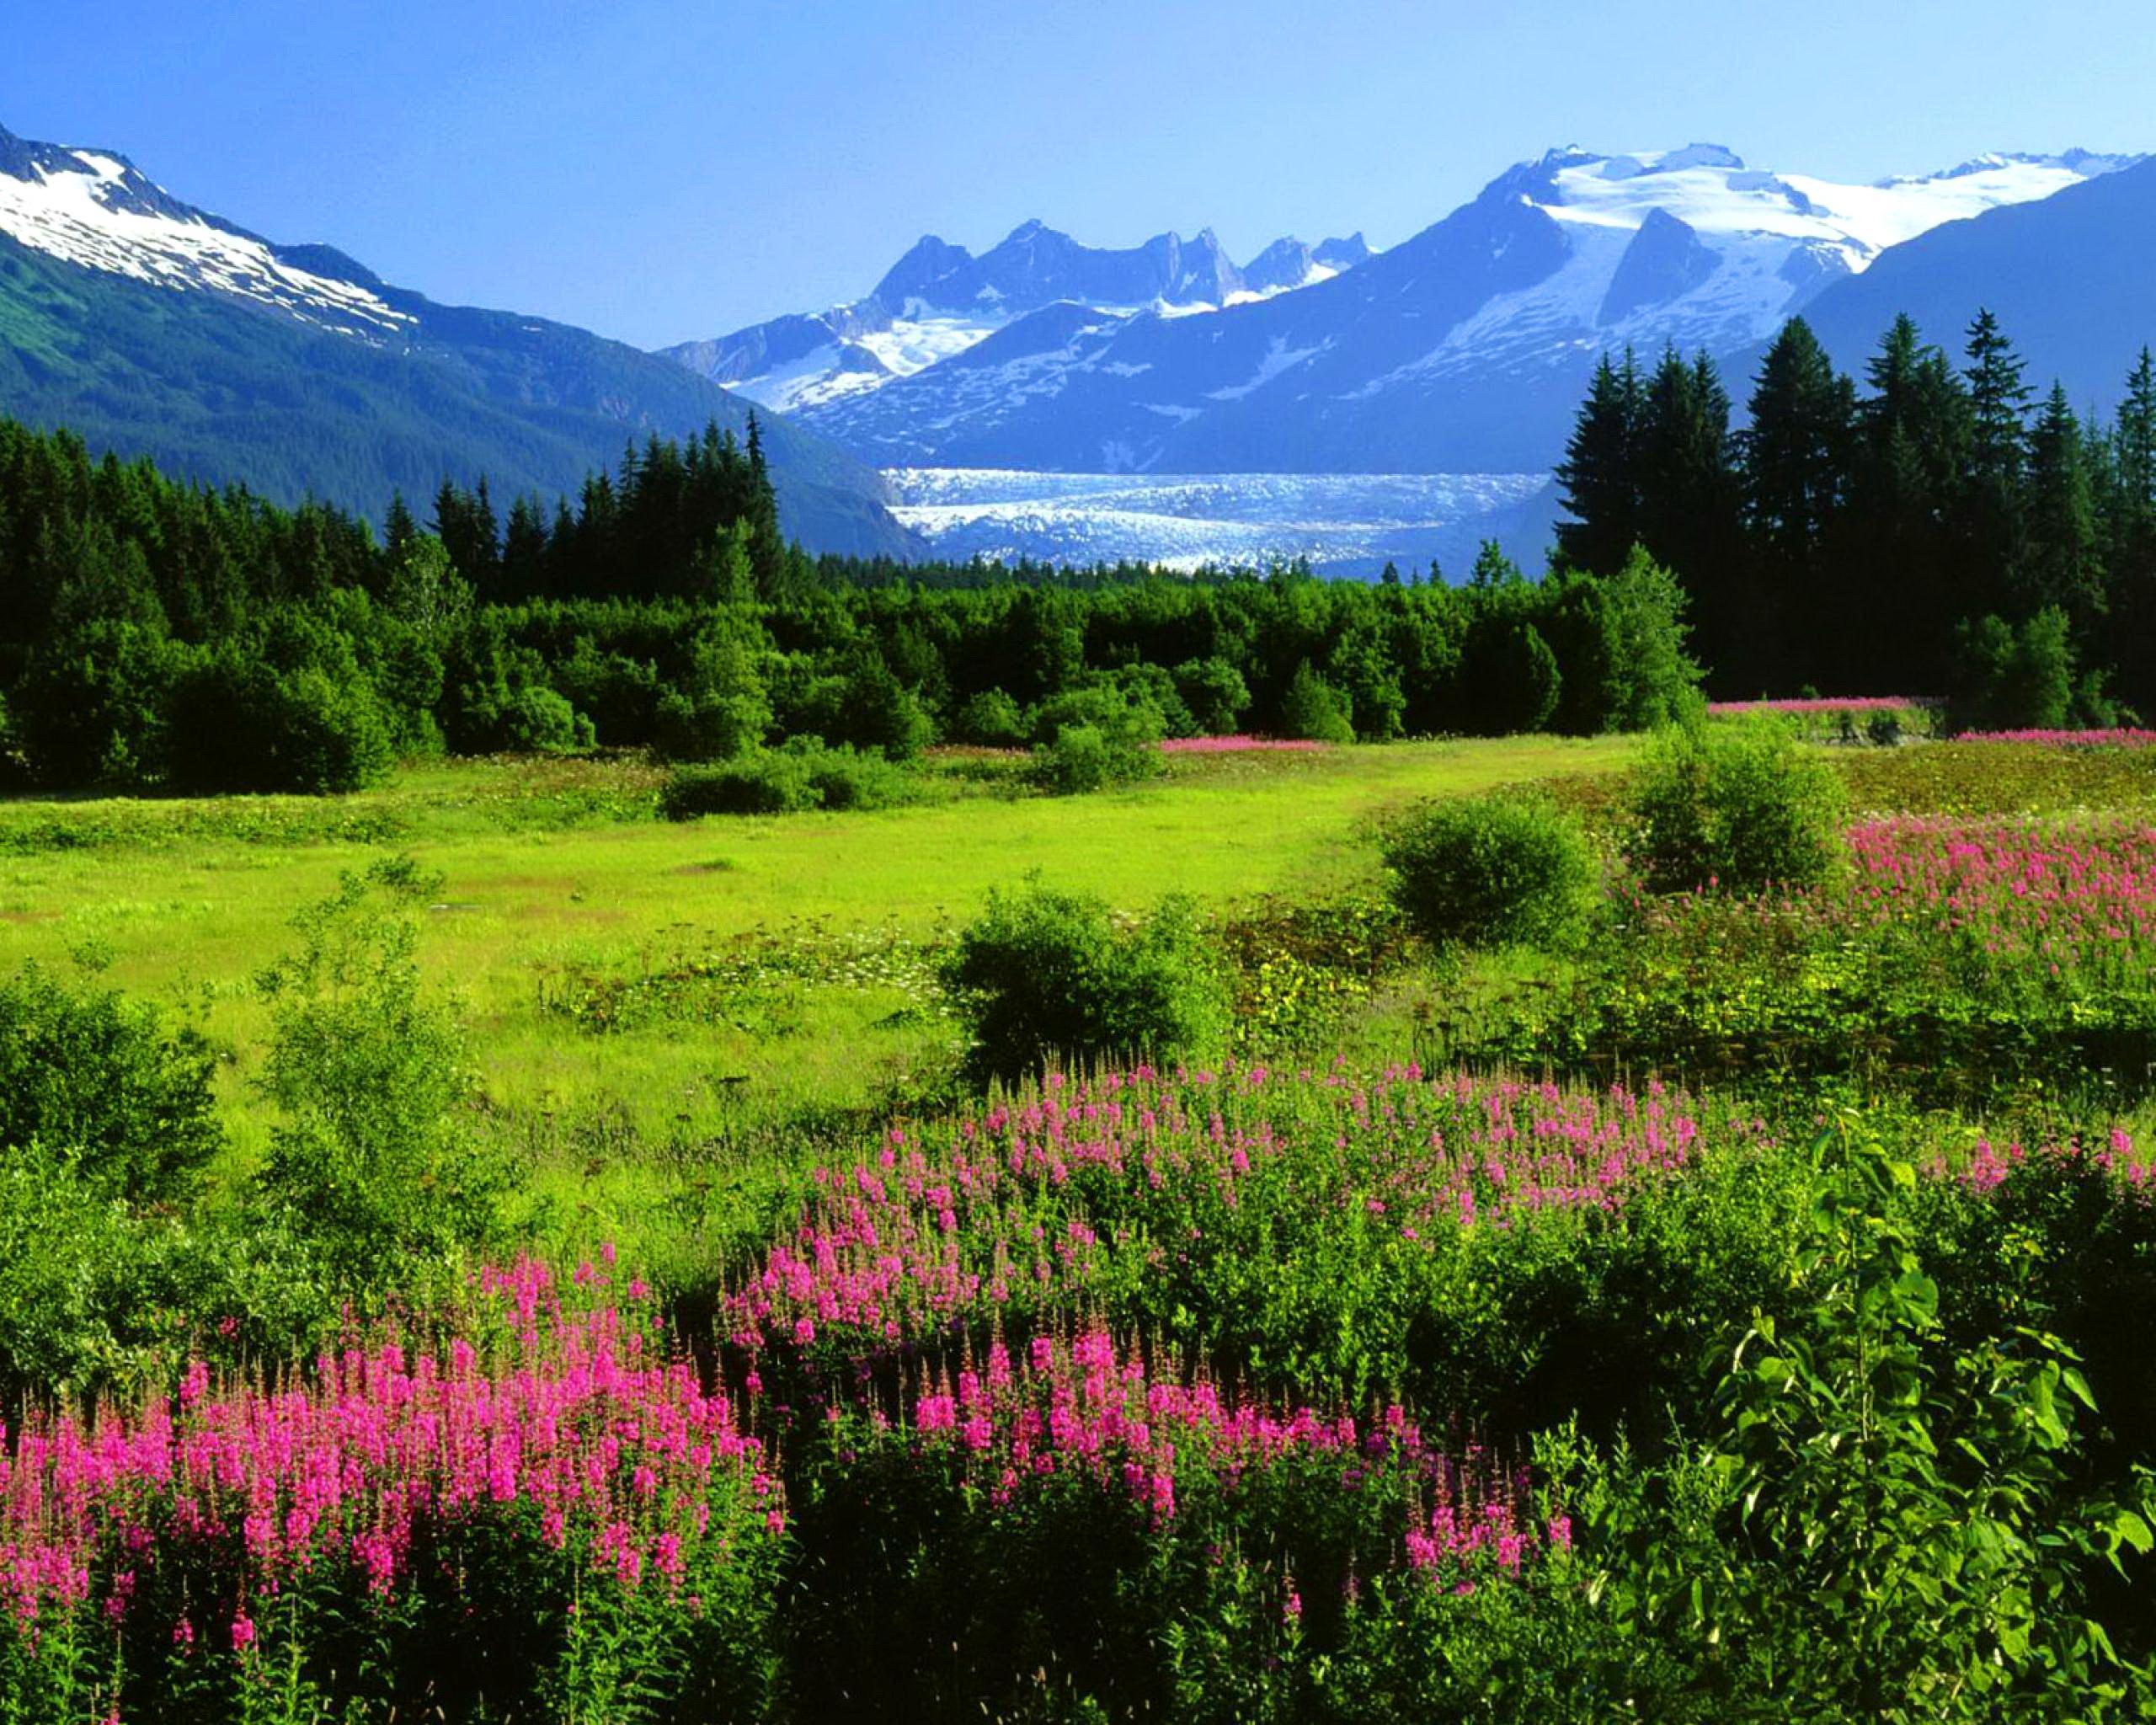 Alaska From A Distance HD desktop wallpaper, Widescreen, High